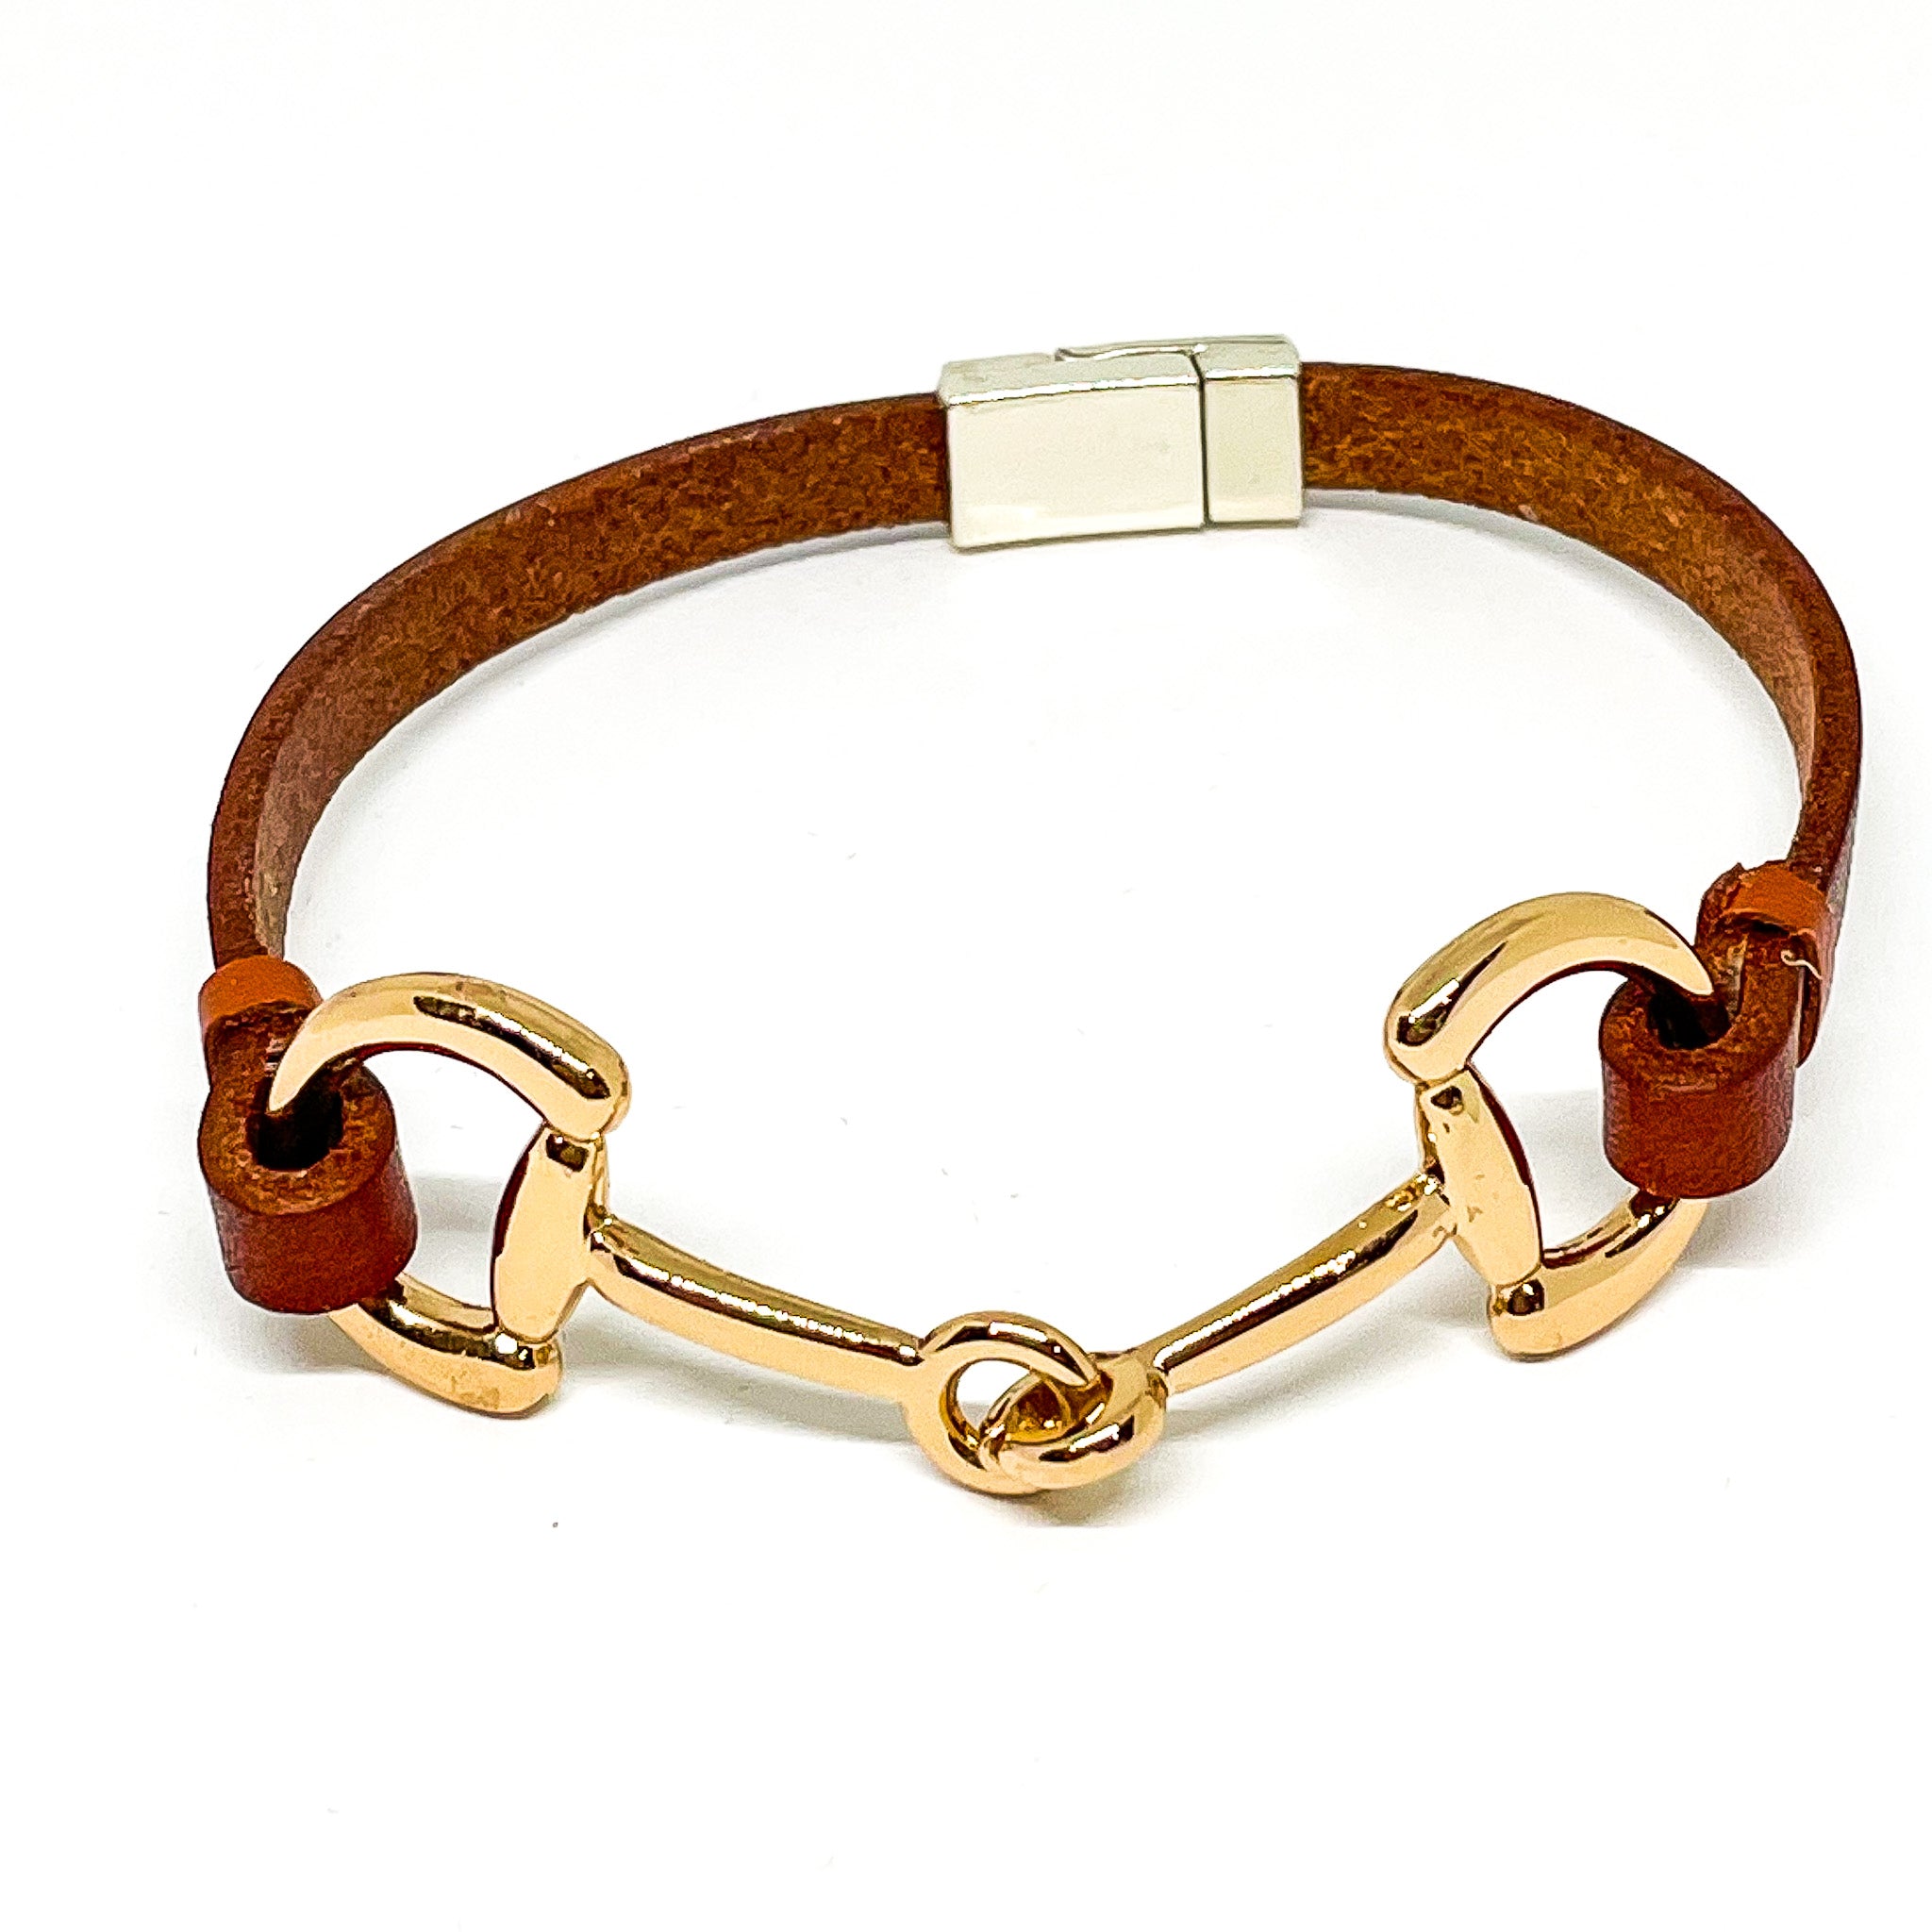 Single strand leather bracelet with bit